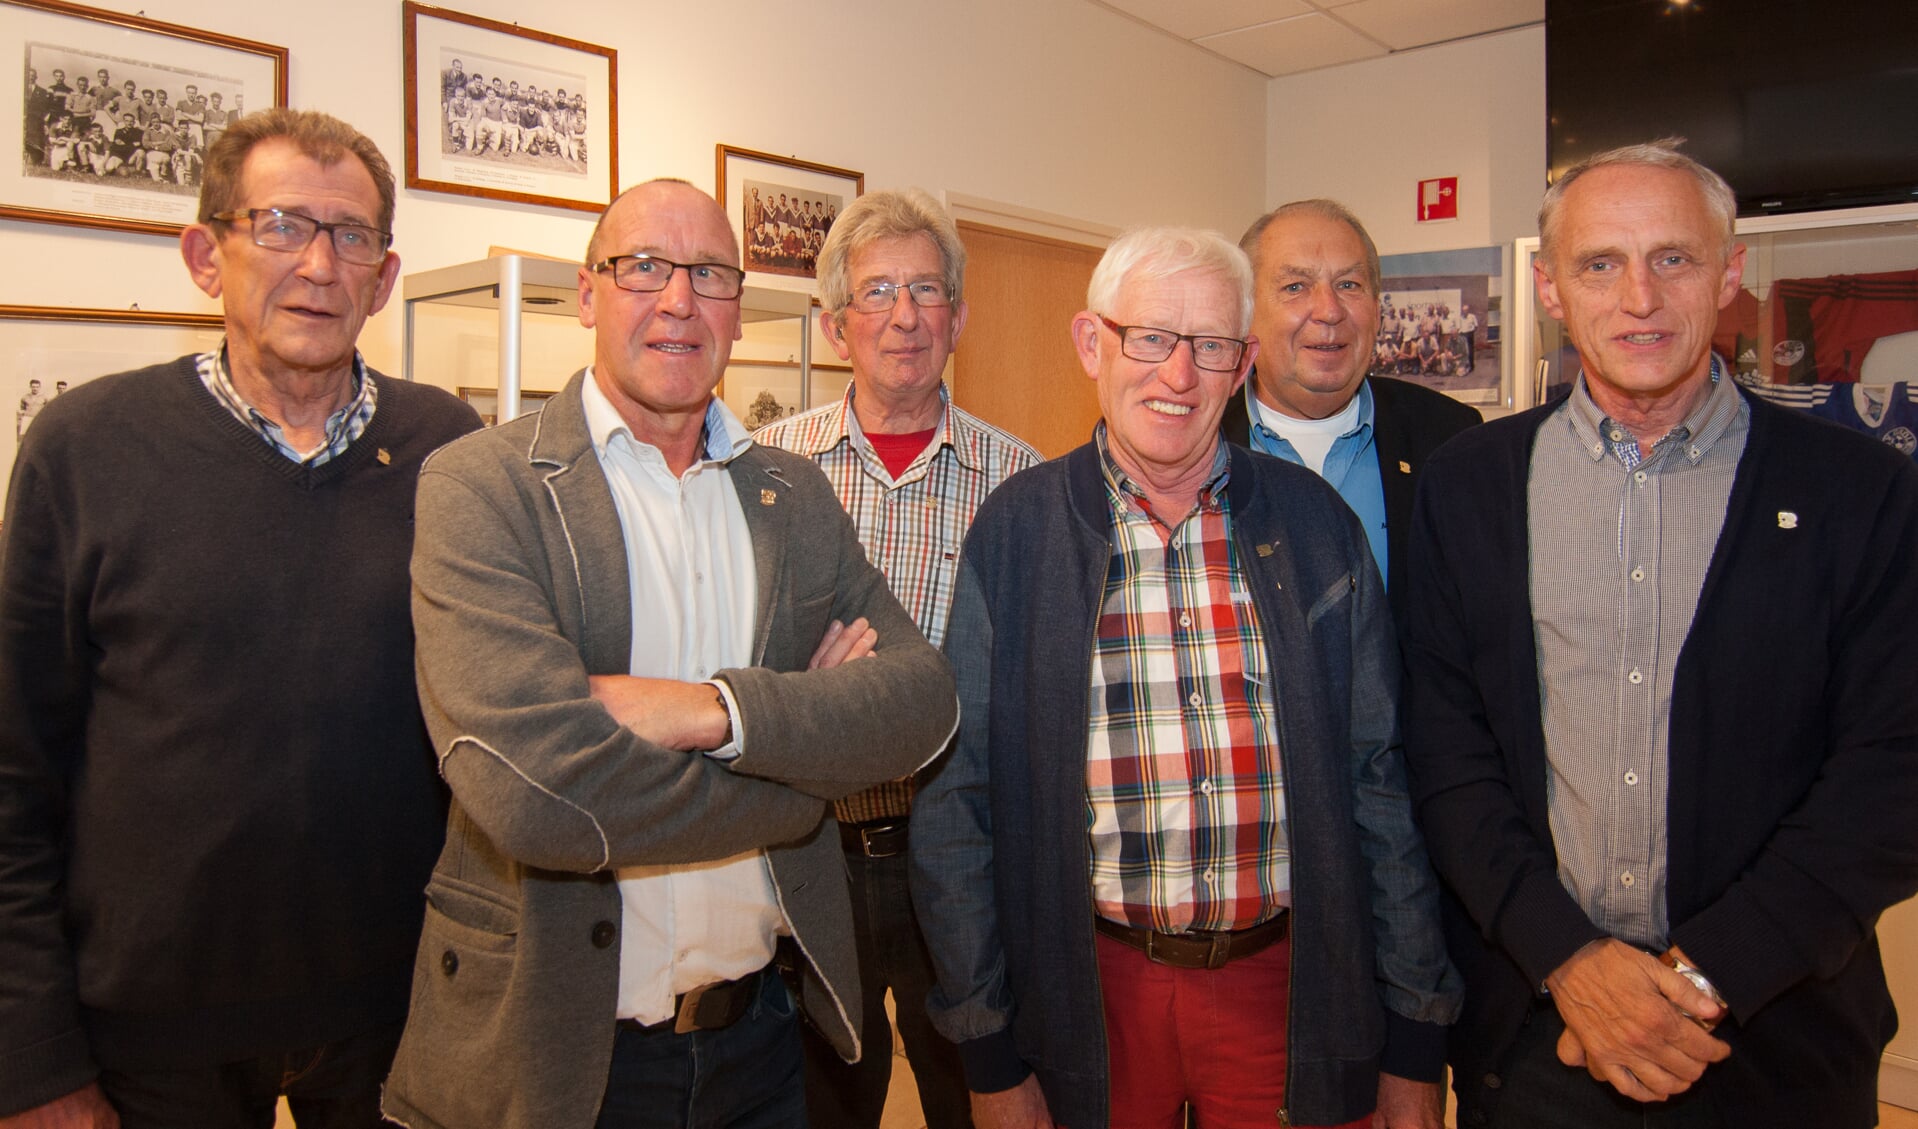 Zes van de zeven jubilarissen met vlnr Gerrit Oosterholt, Gerry van Dongeren, Wim Roes, Henk Porskamp, Hans Koehorst en Paul Overkemping. Foto: Marcel Houwer.